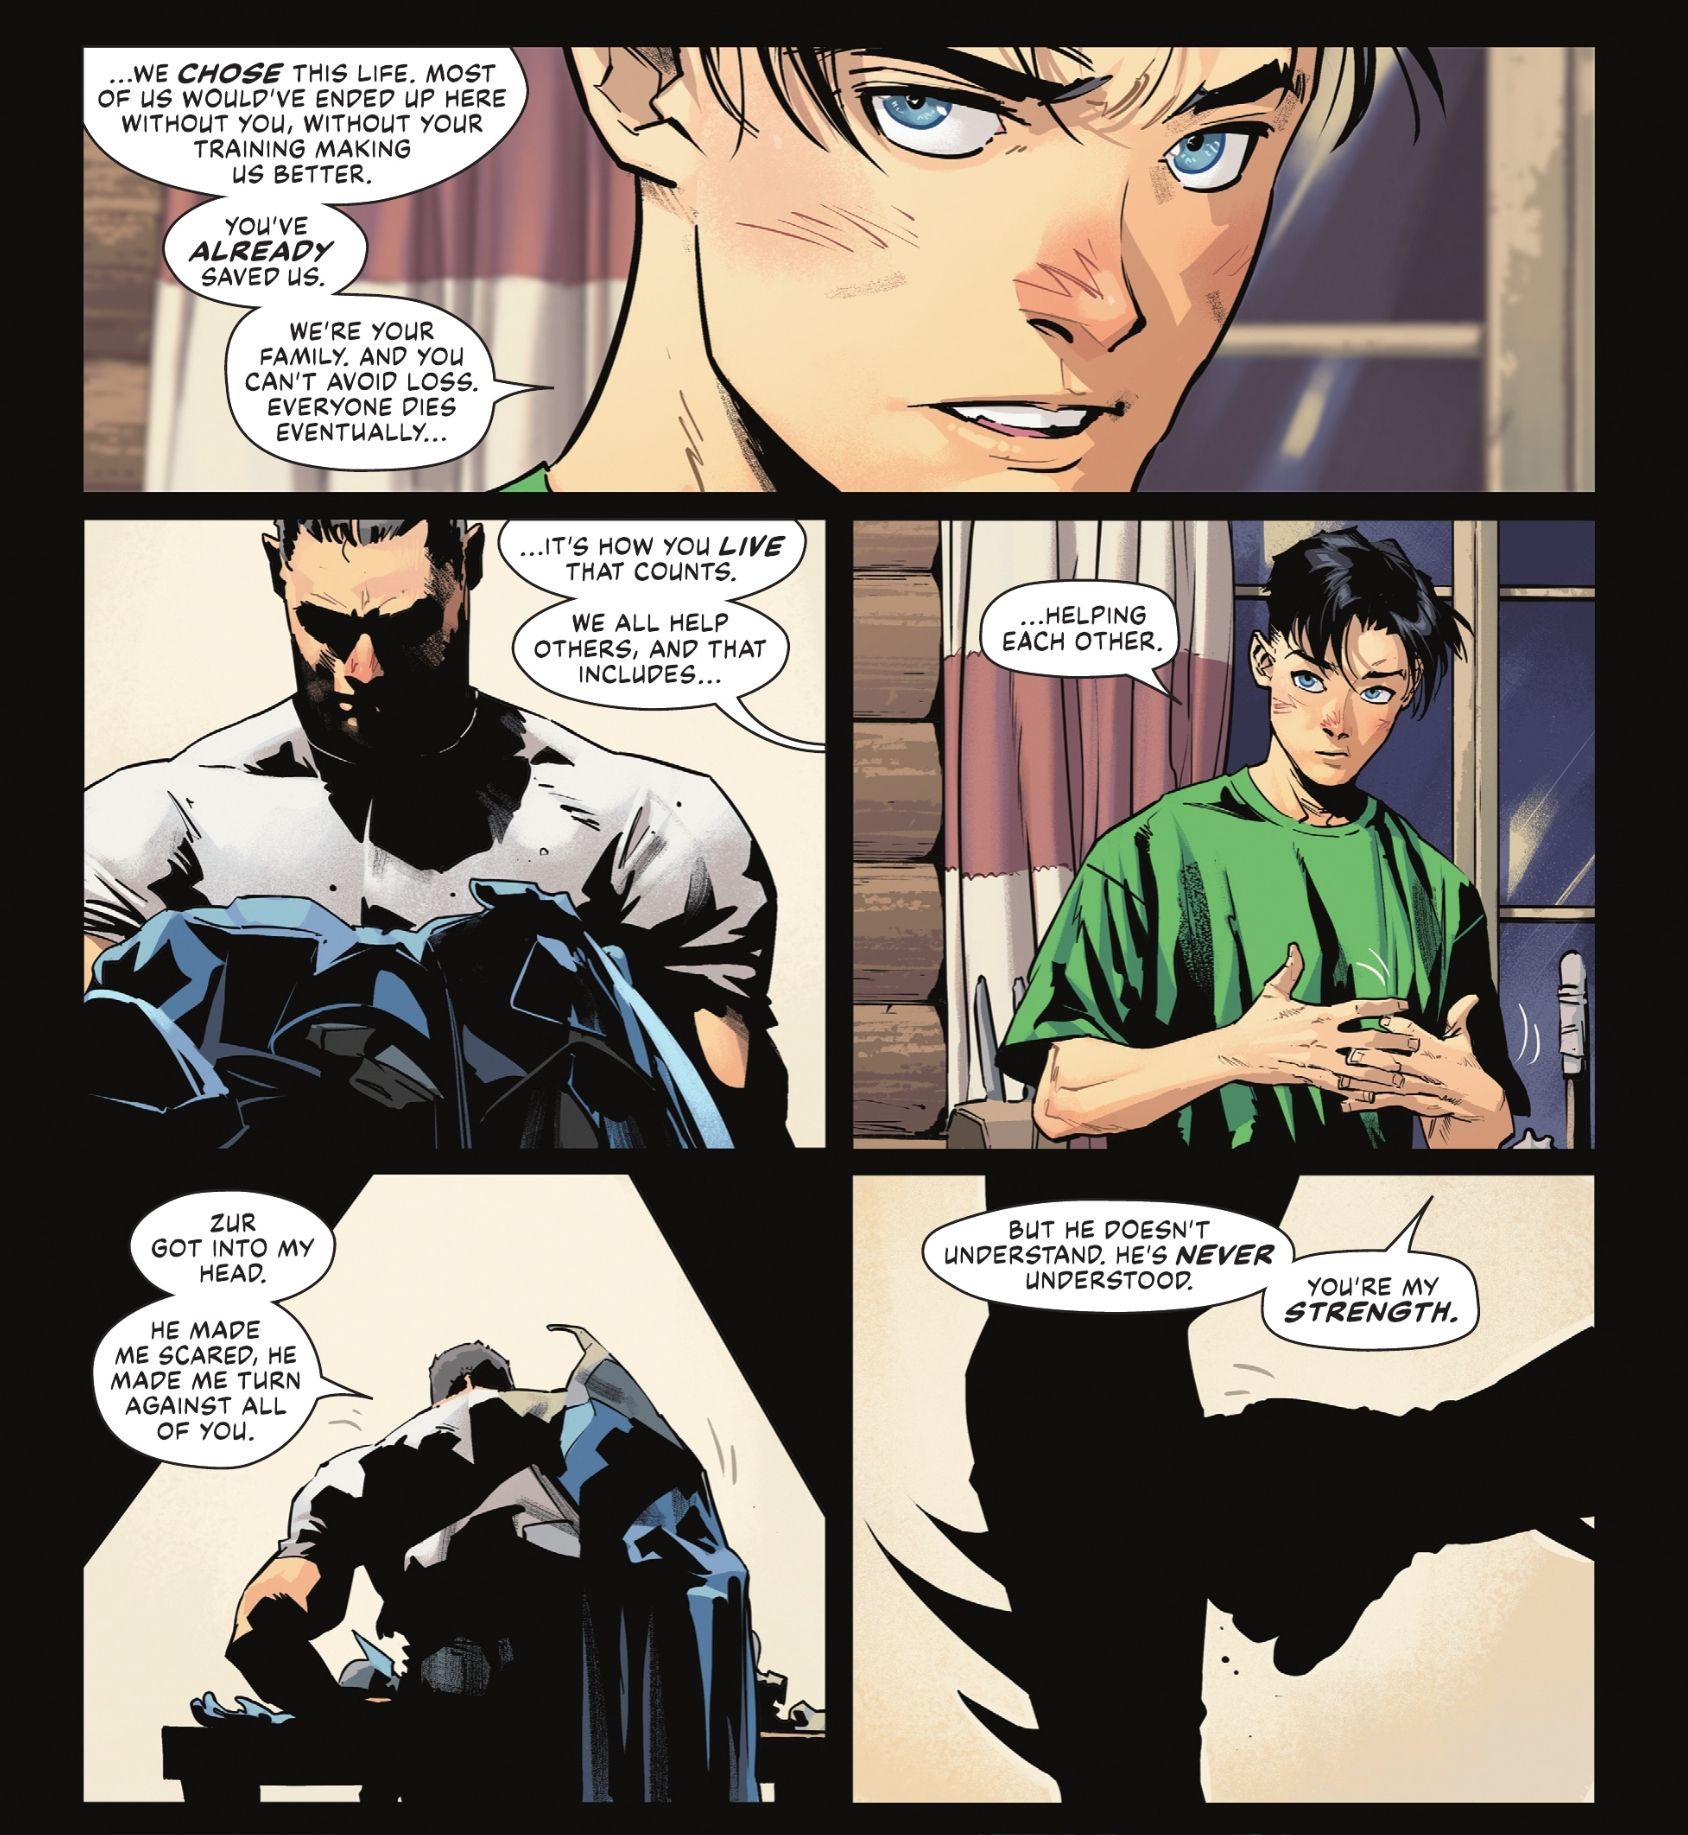 Tim przypomina Batmanowi, że jego rodzina jest tam, aby go wspierać i pomagać.